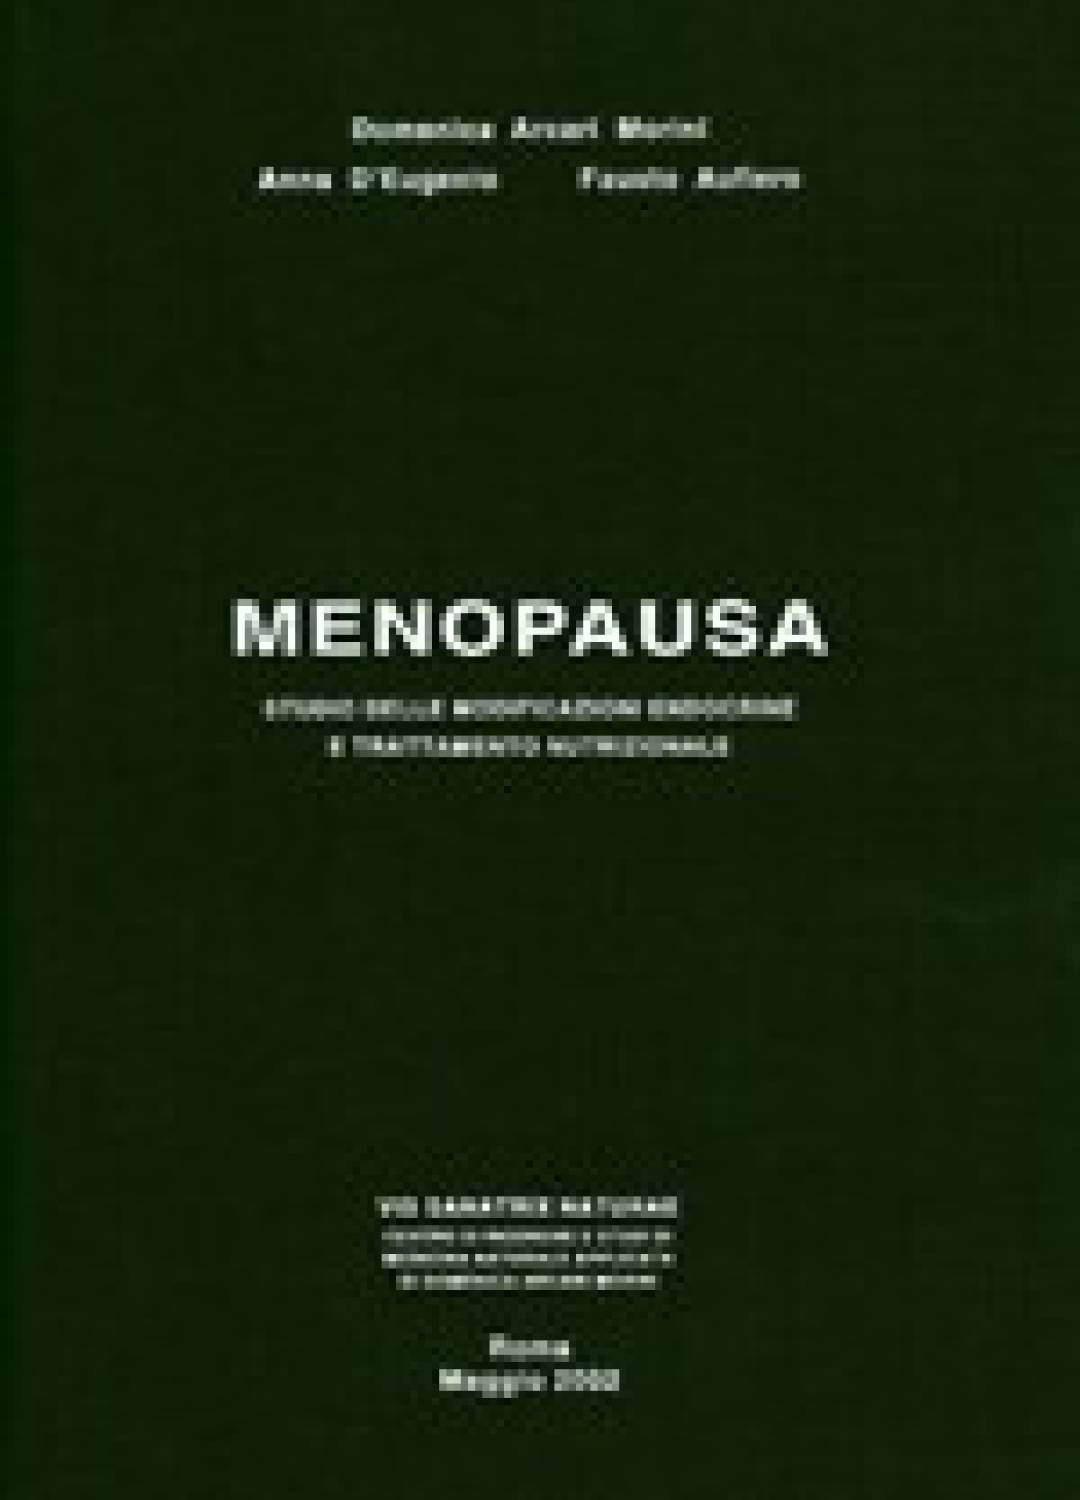 Menopausa - Morini, Aufiero, D'Eugenio